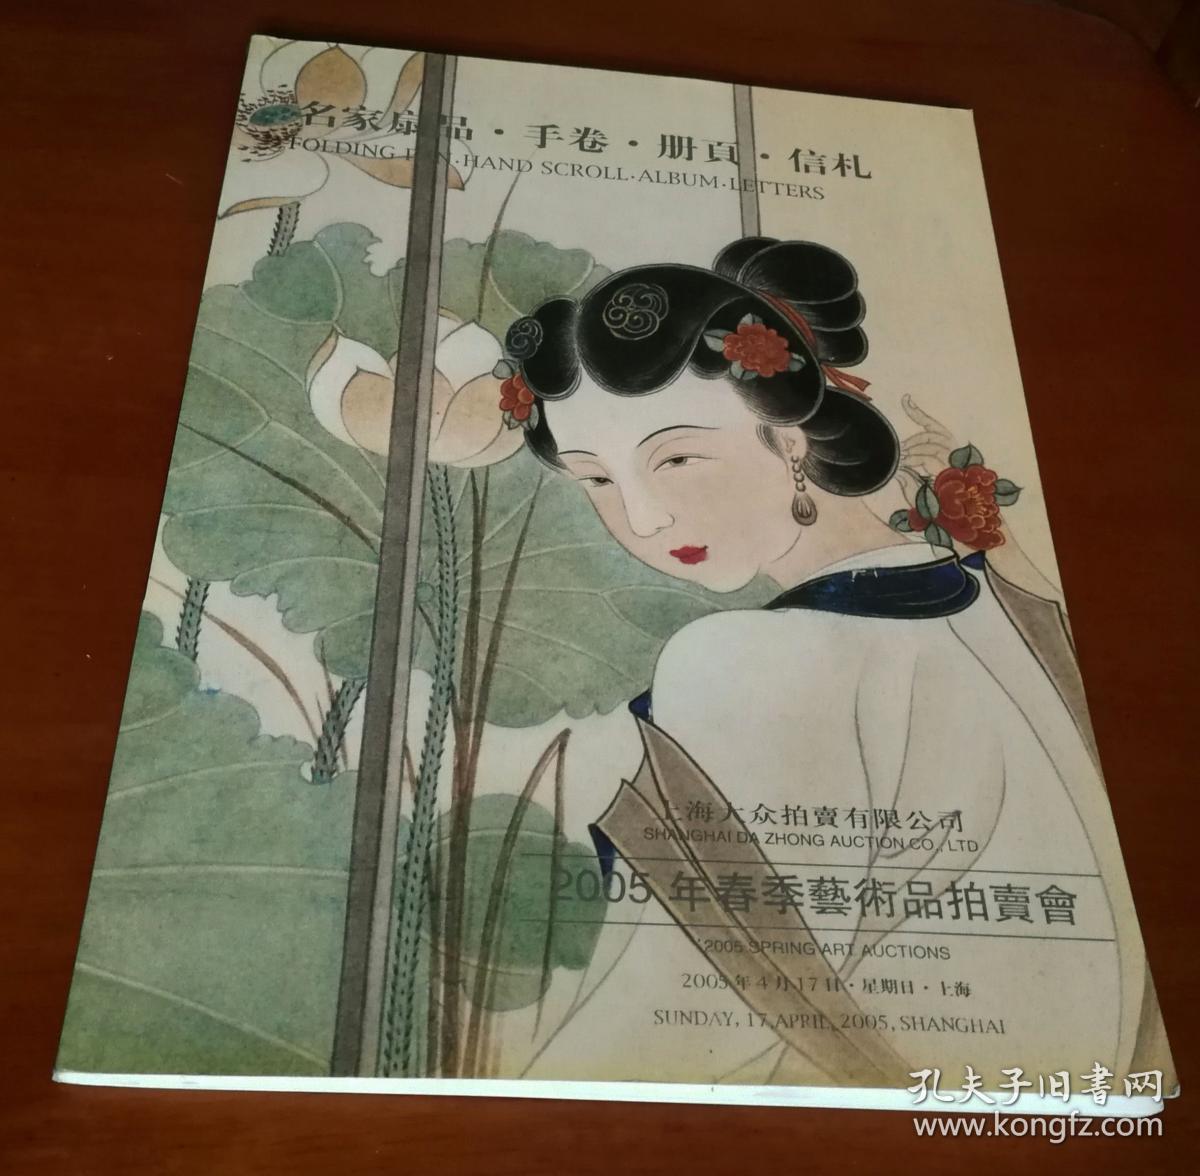 上海大众拍卖有限公司 2005年春季艺术品拍卖会 名家扇品•手卷•册页•信札